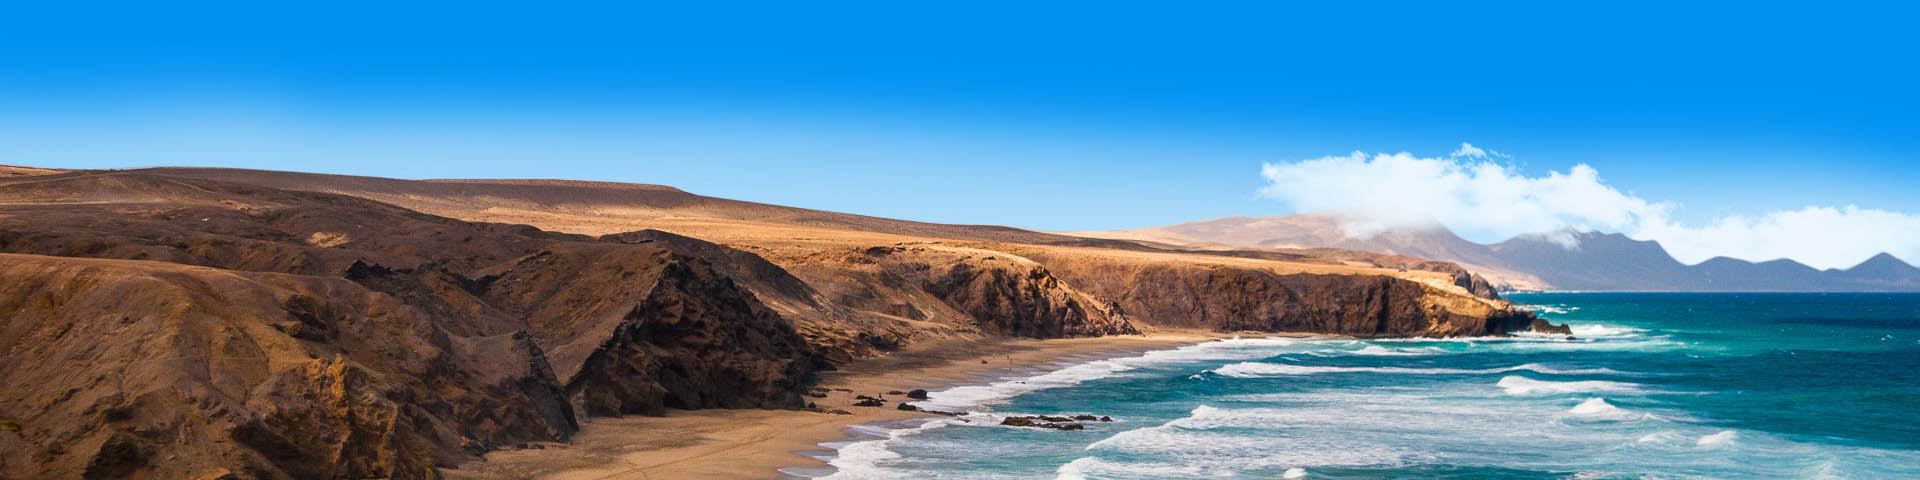 De kustlijn van Fuerteventura met de zee en het landschap op de achtergrond